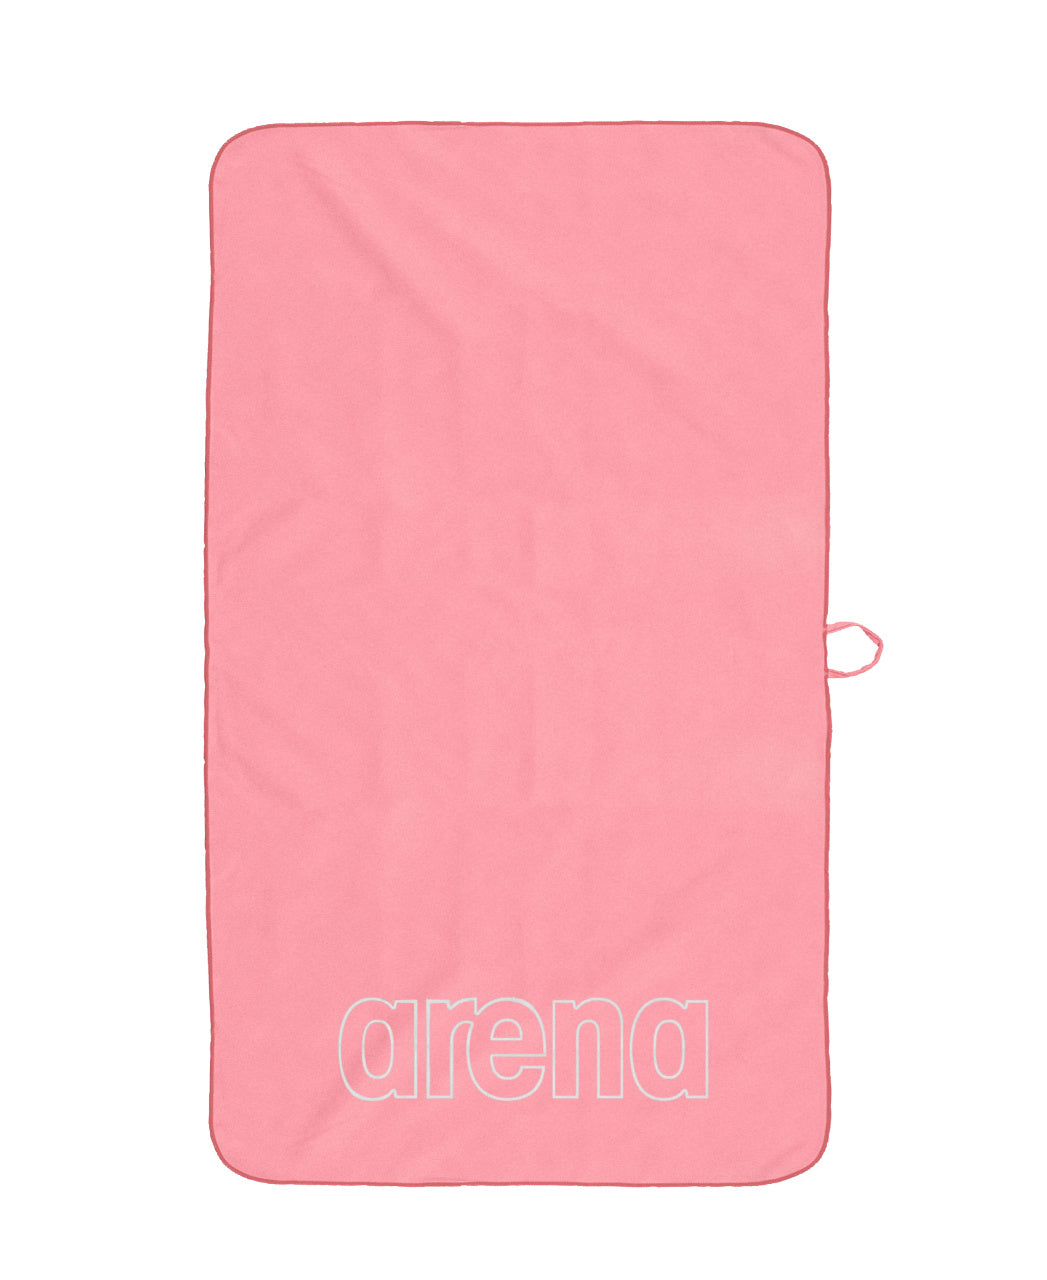 Mikrofiber Arena håndklæde Pink